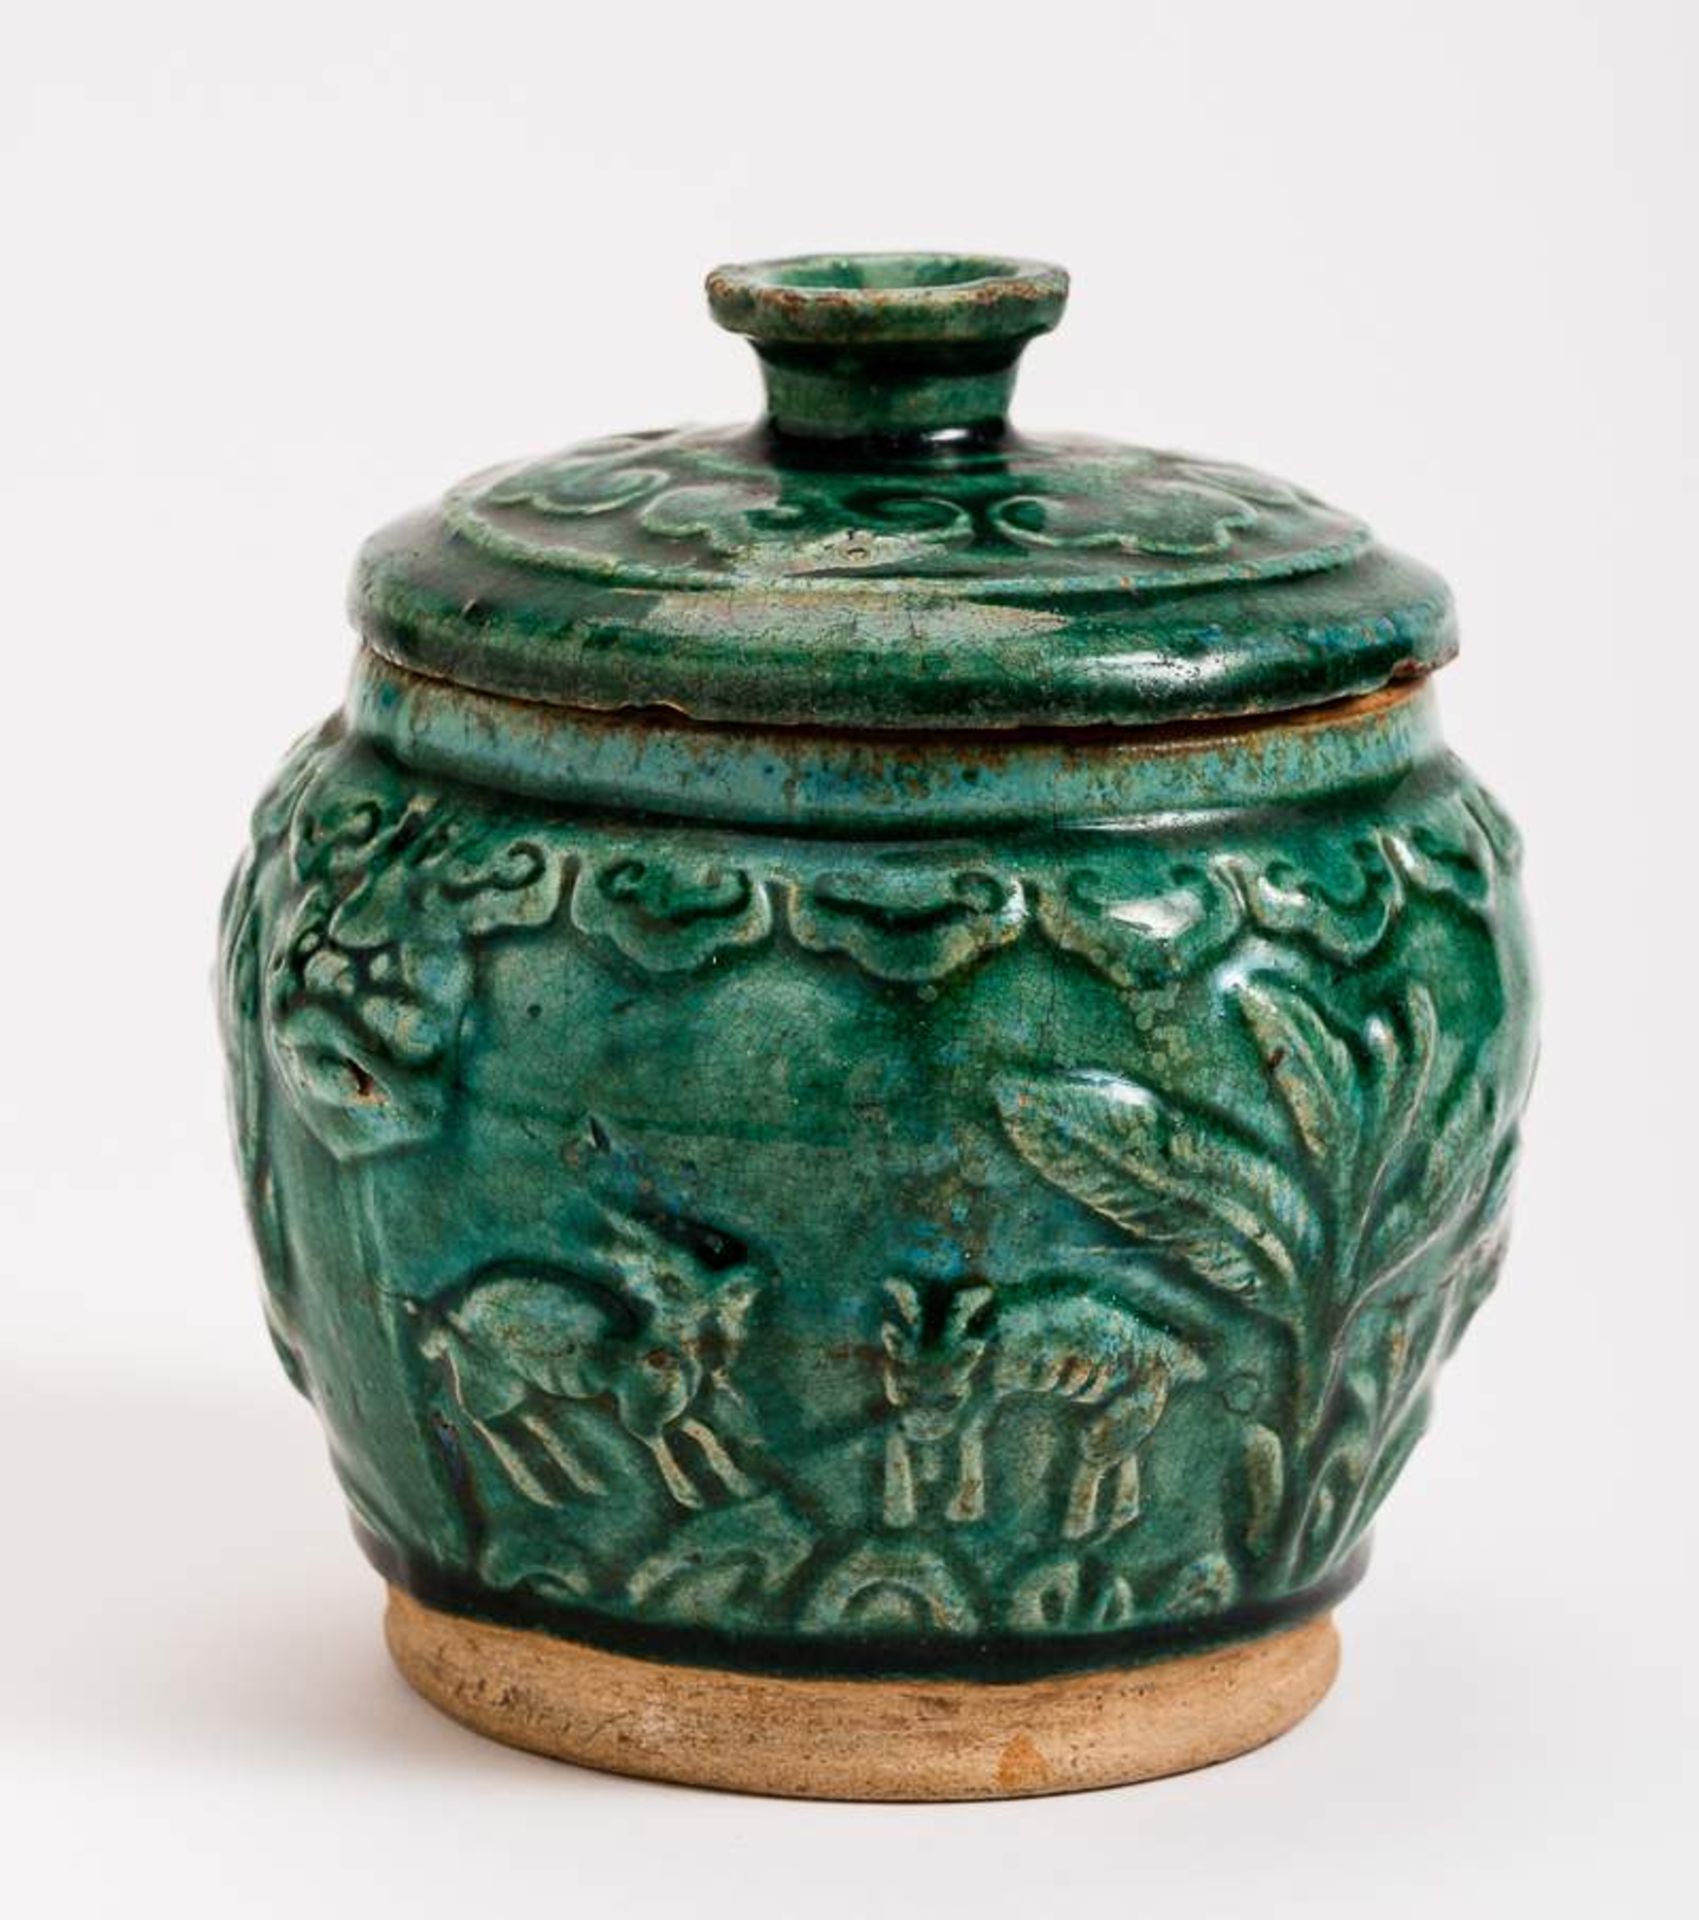 DECKELTOPF MIT ZIEGEN UND DRACHEN Grün glasierte Keramik. China, Qing, vermutlich 17. Jh.